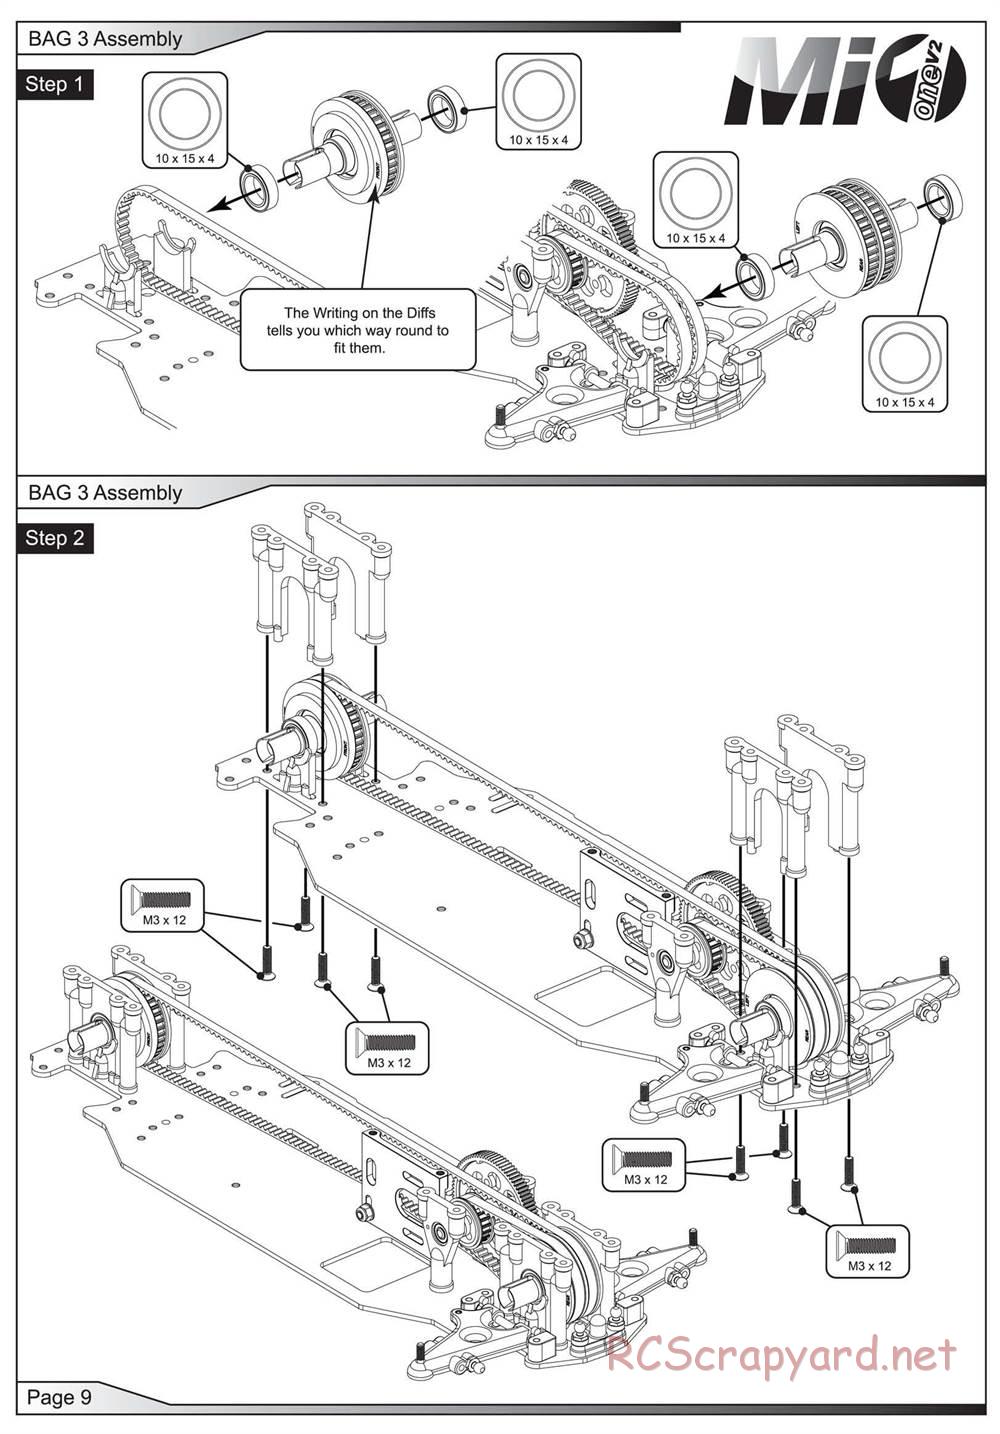 Schumacher - Mi1v2 - Manual - Page 10